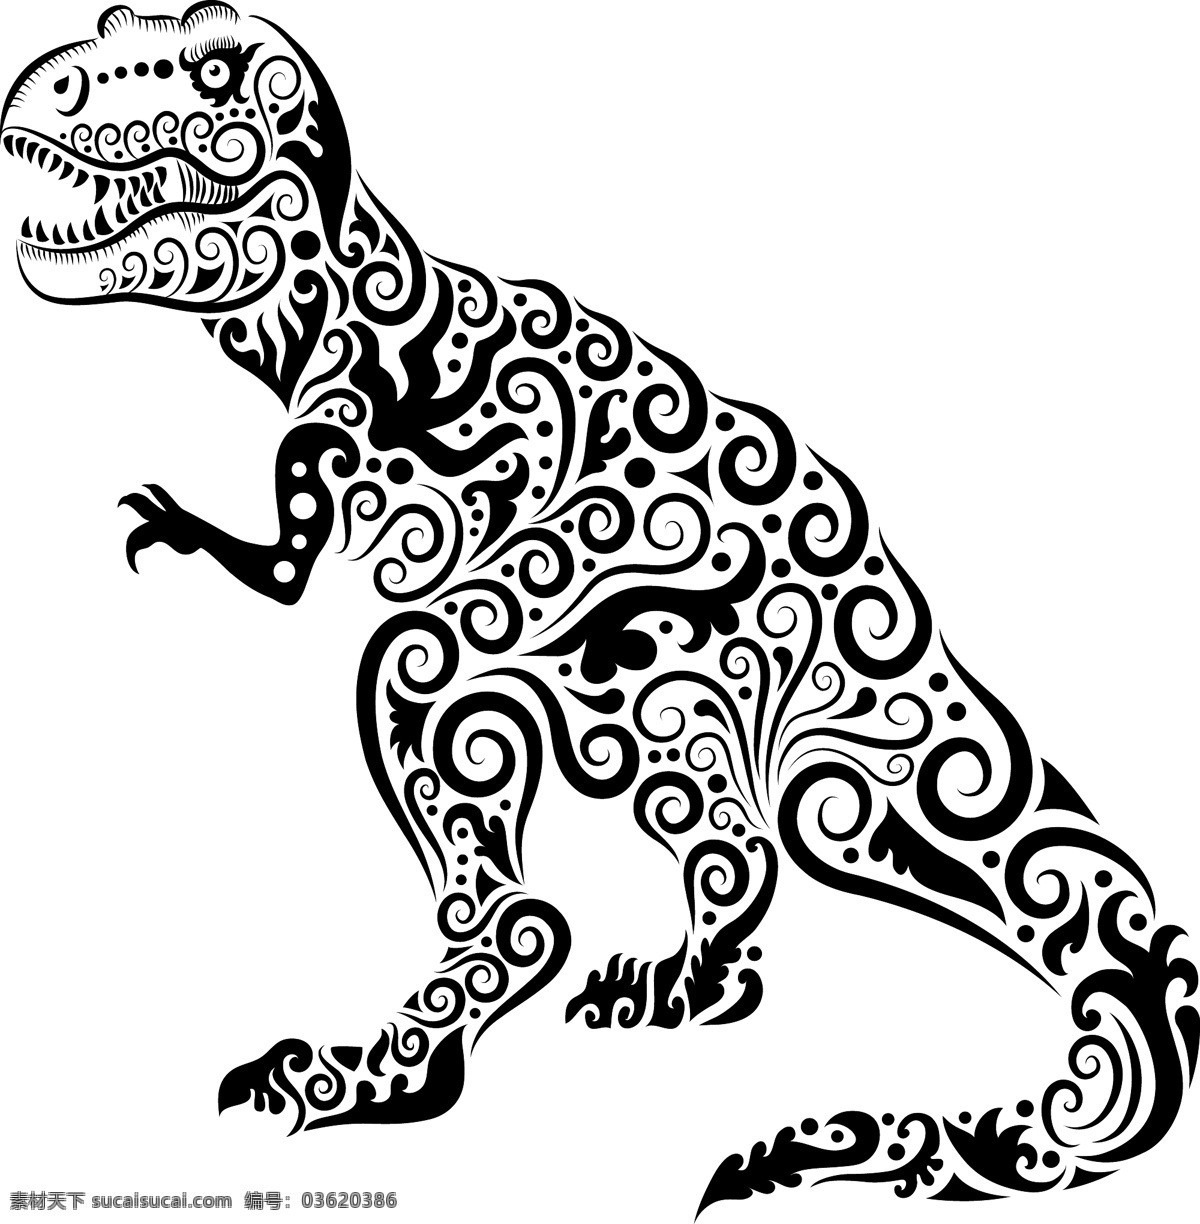 花纹 恐龙 矢量 刺青 动物 剪影 矢量素材 手绘 图案 图形 纹身 线稿 线条 矢量图 其他矢量图